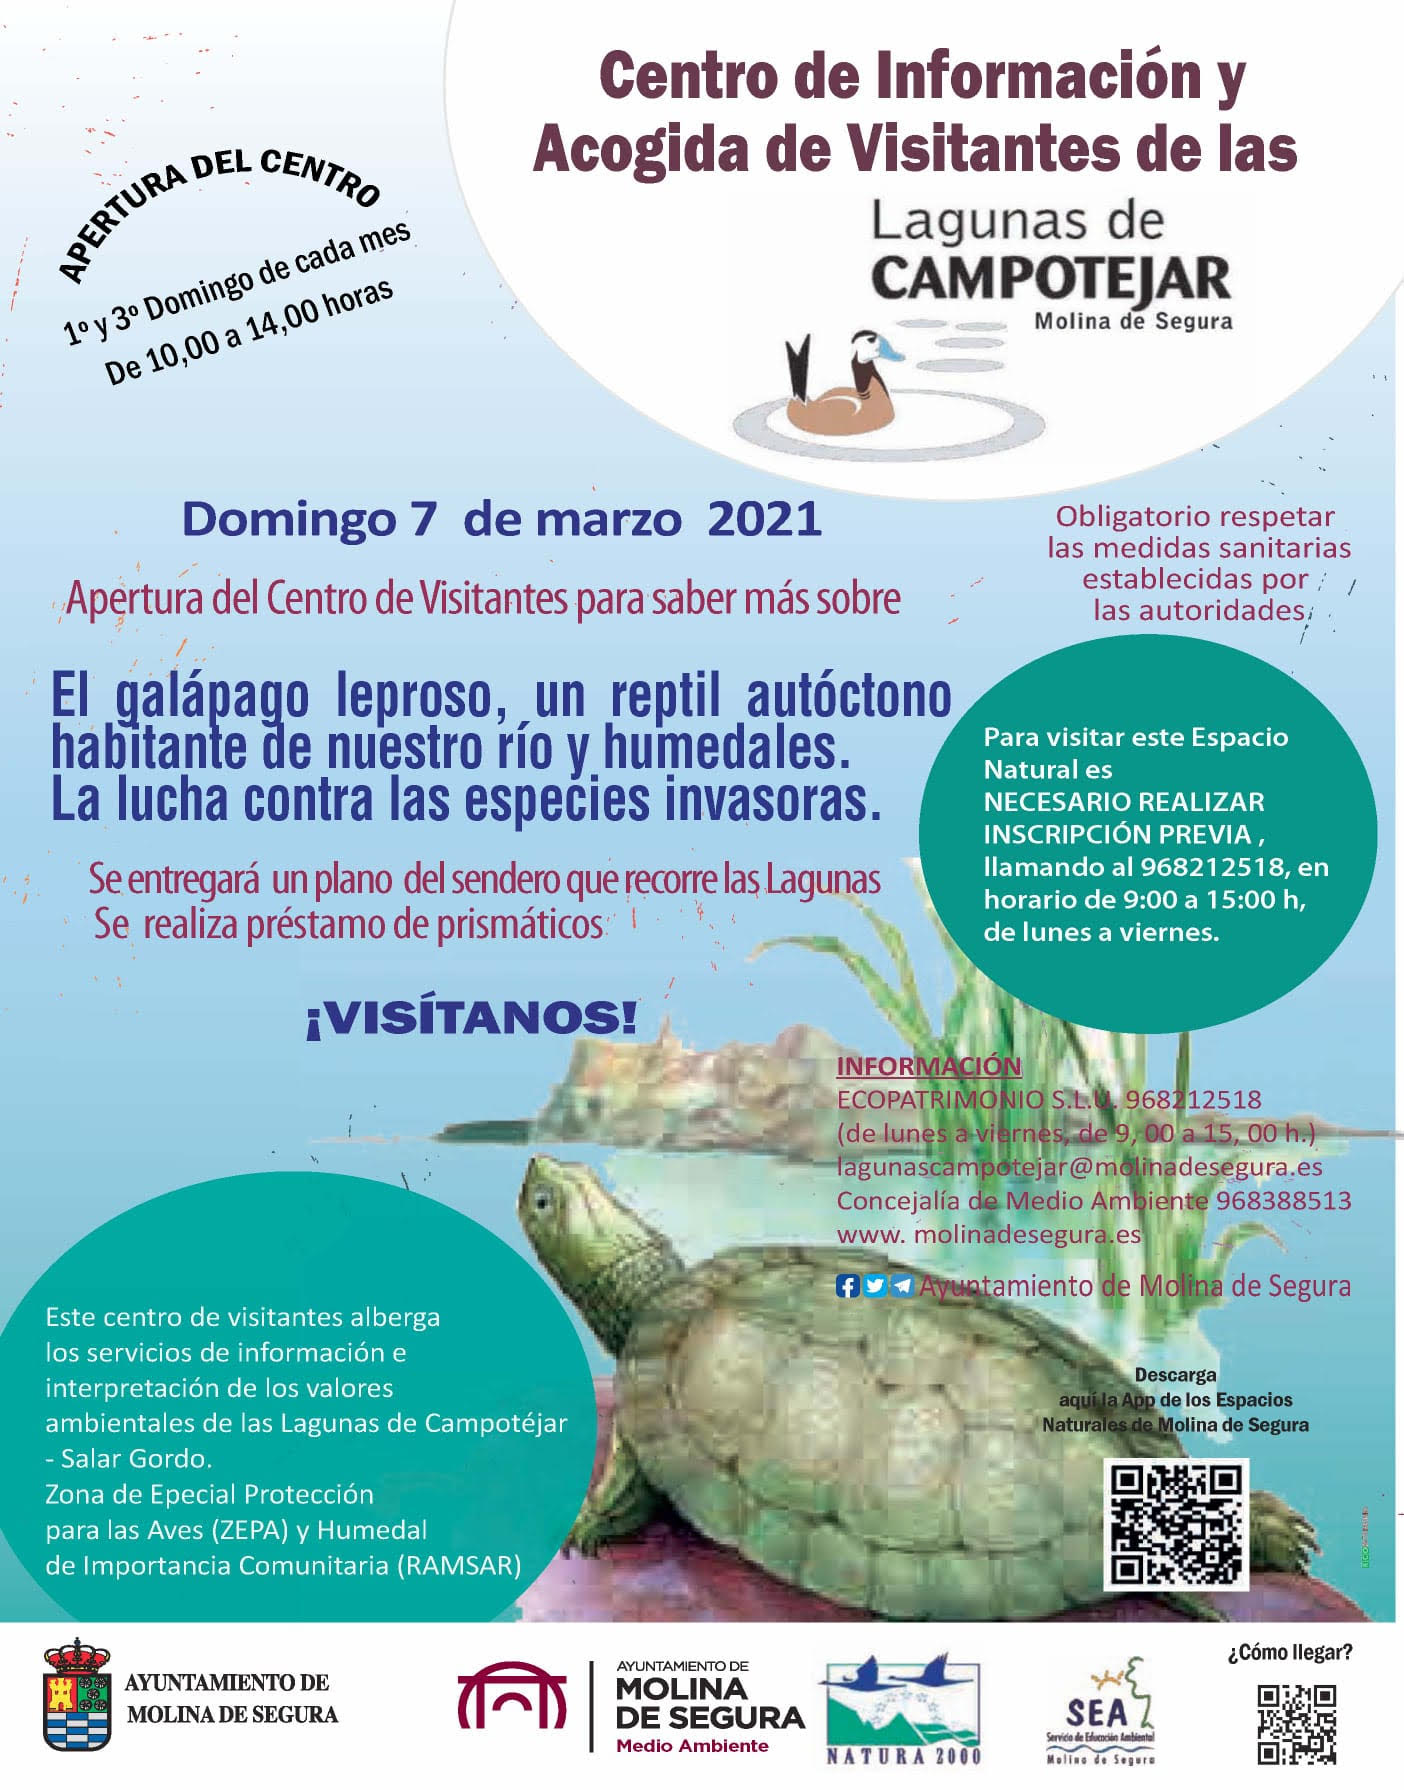 Jornada dedicada al galápago leproso en las Lagunas de Campotéjar, Ayto. de Molina de Segura